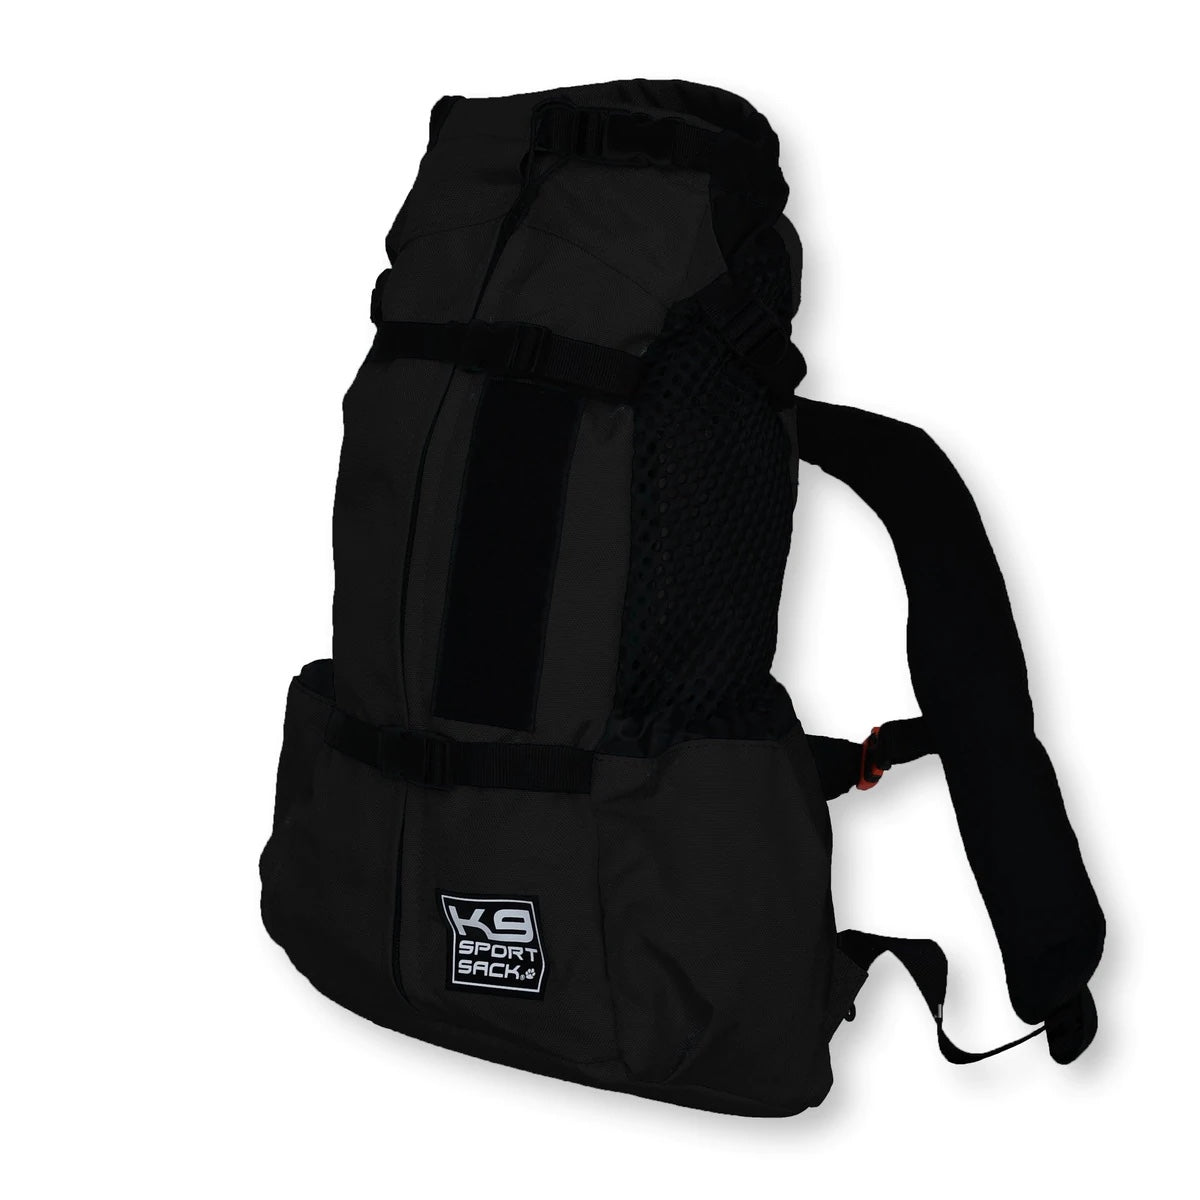 K9 Sport Sack® Air 2 - Dog Carrier Backpack in Black Colour